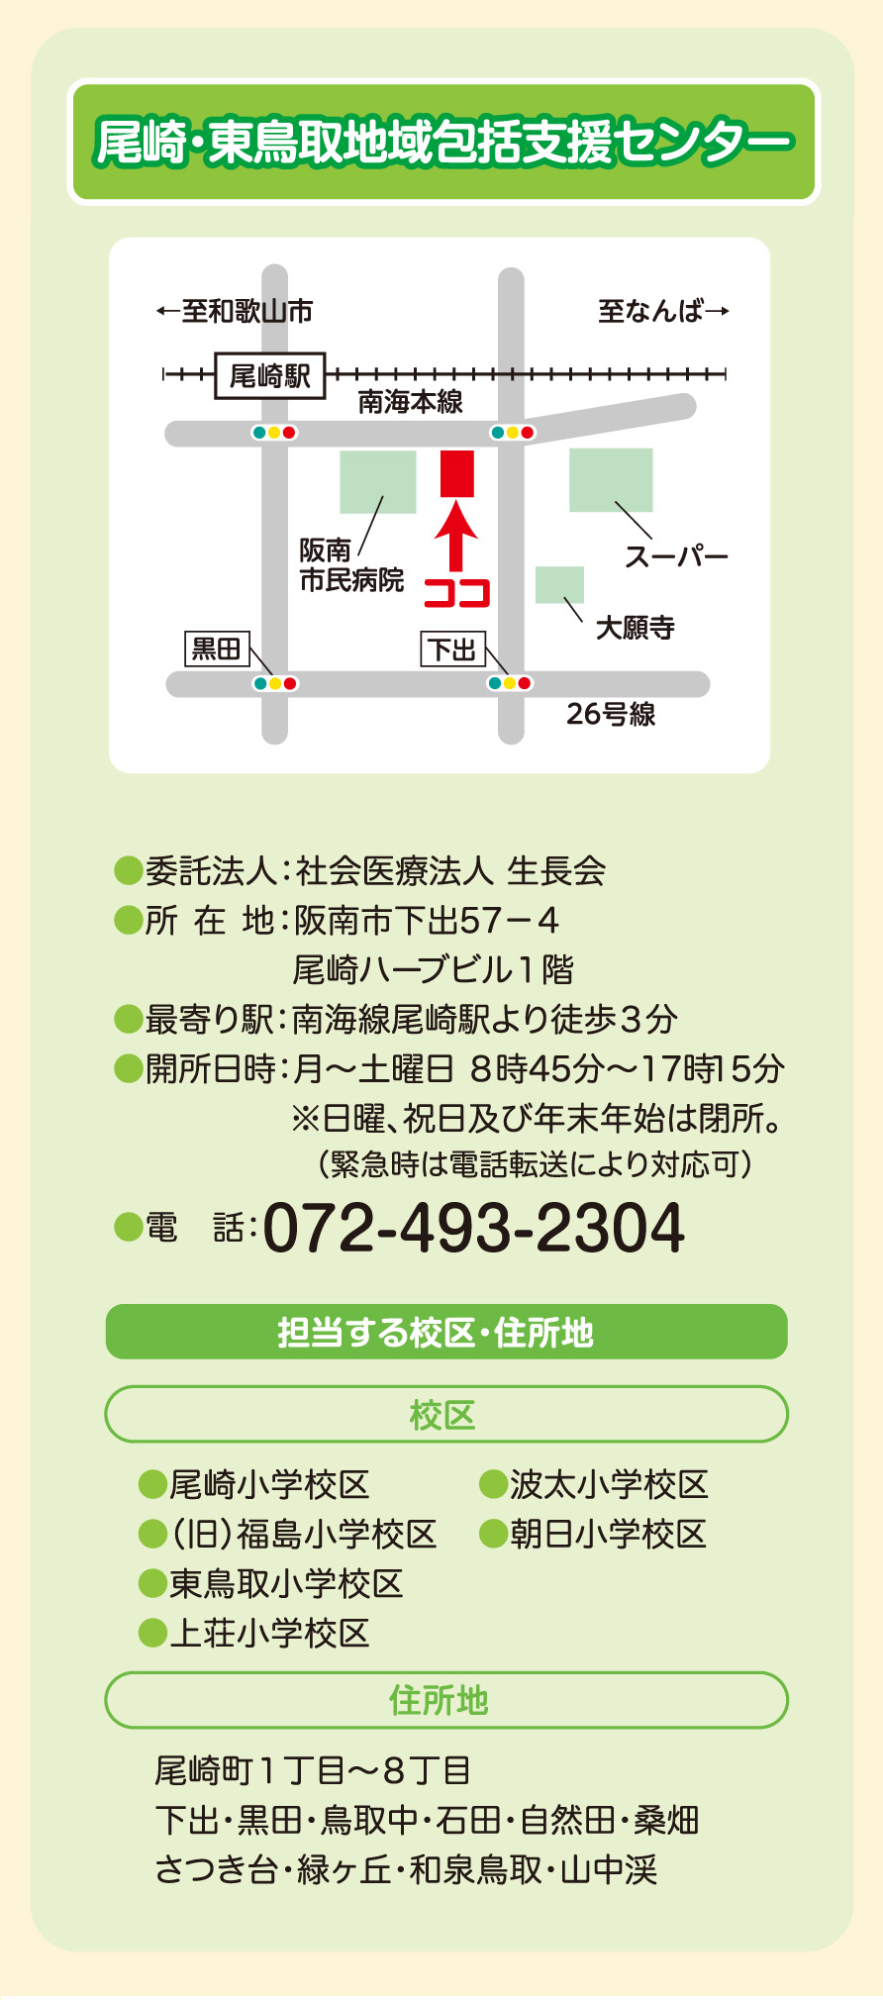 尾崎・東鳥取地域包括支援センター